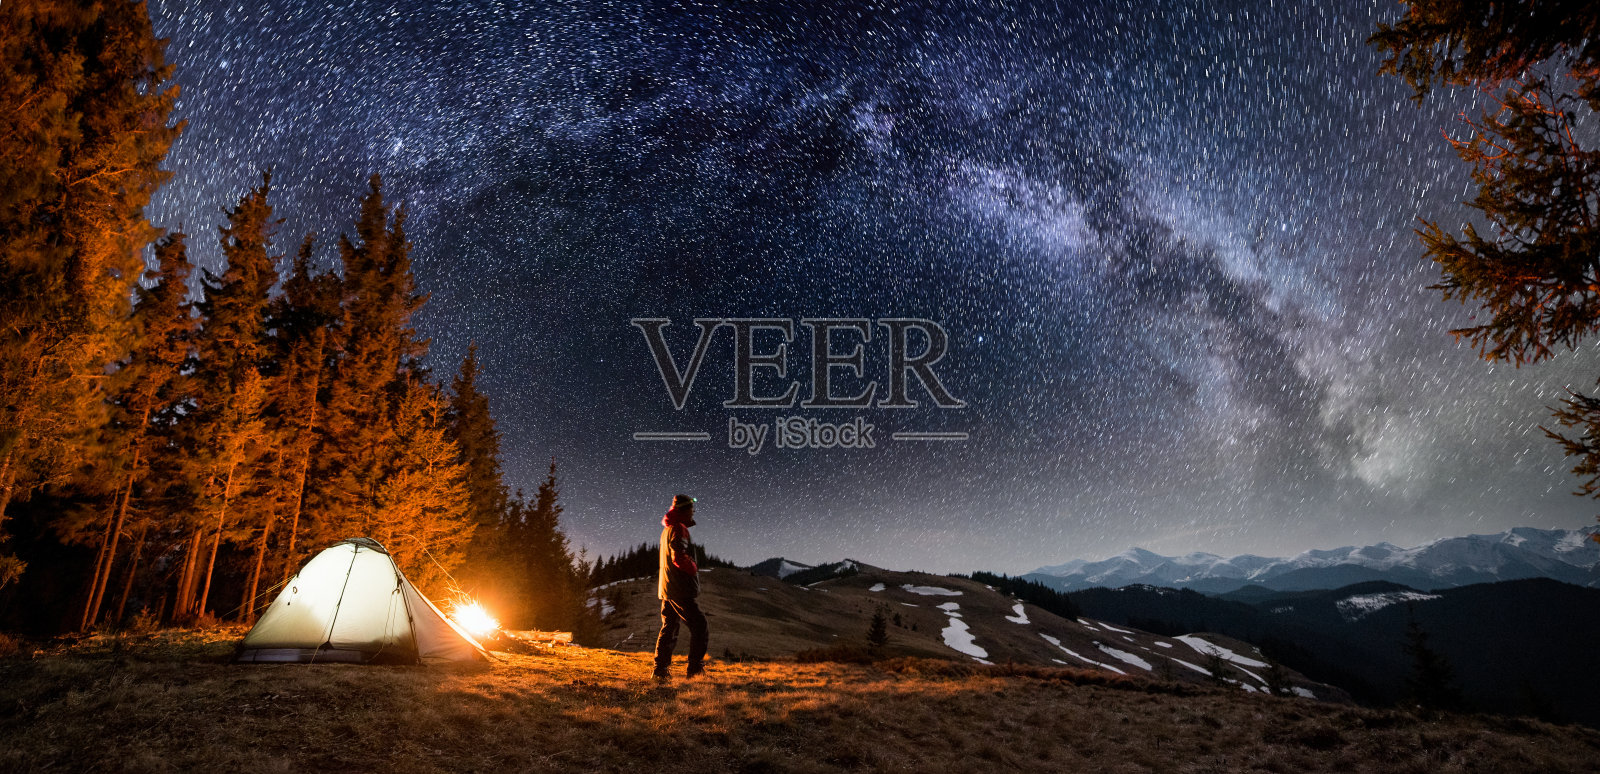 男游客晚上在森林附近的营地休息。一个人站在篝火和帐篷附近，在美丽的夜空下，满是星星和银河，欣赏夜景。全景景观照片摄影图片